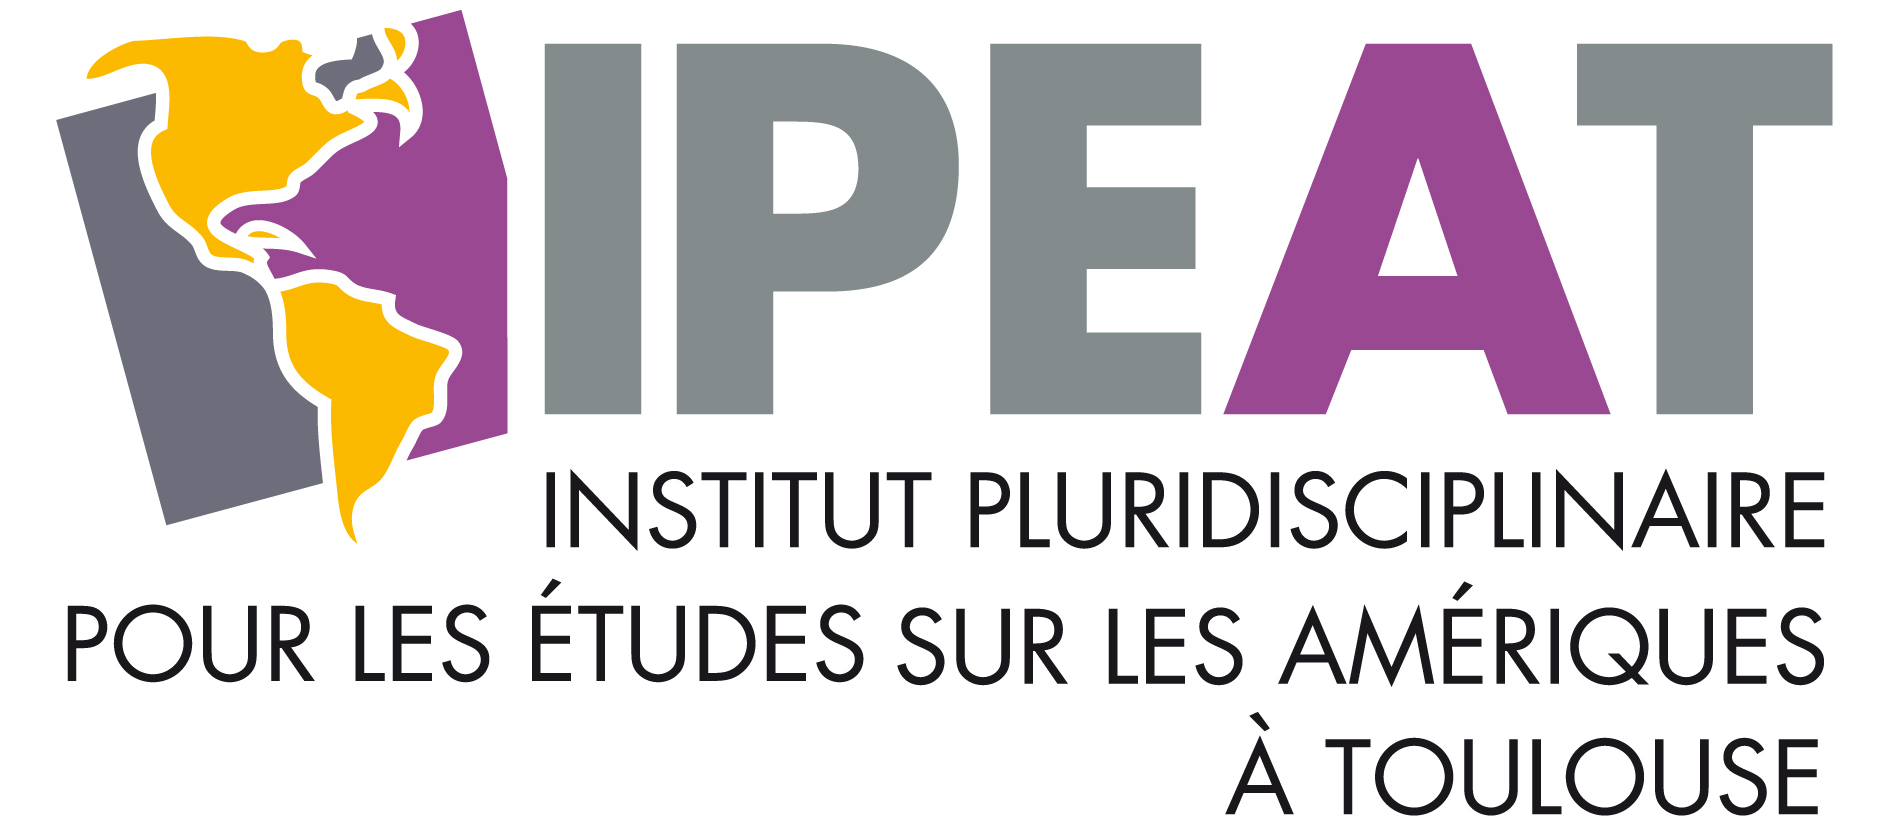 Institut Pluridisciplinaire pour les Études sur les Amériques à Toulouse  (IPEAT) - Université Toulouse - Jean Jaurès